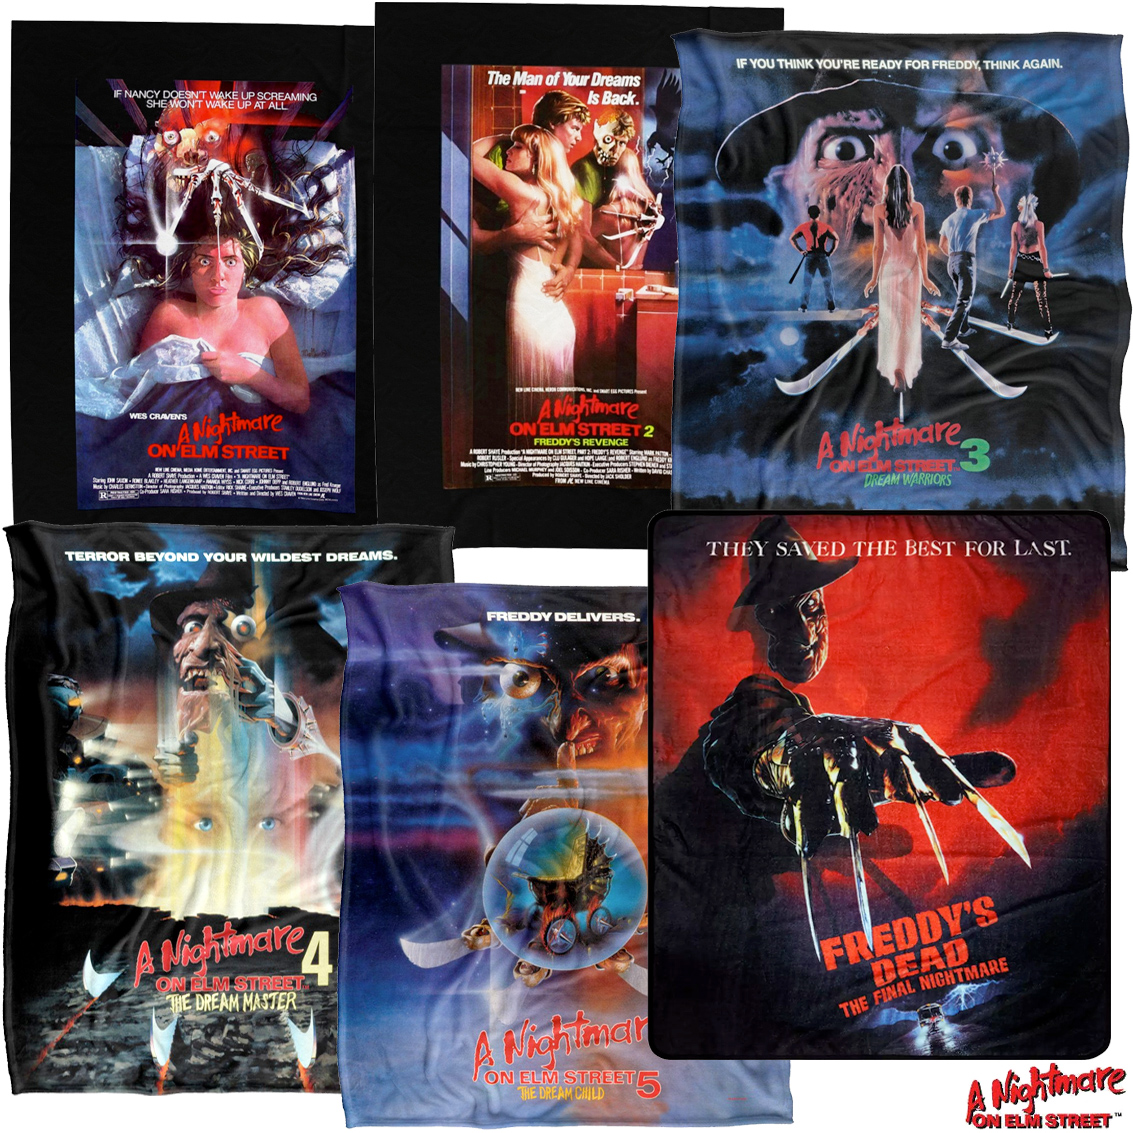 Cobertores dos 6 Primeiros Filmes da Série A Hora do Pesadelo (A Nightmare On Elm Street) com Freddy Krueger